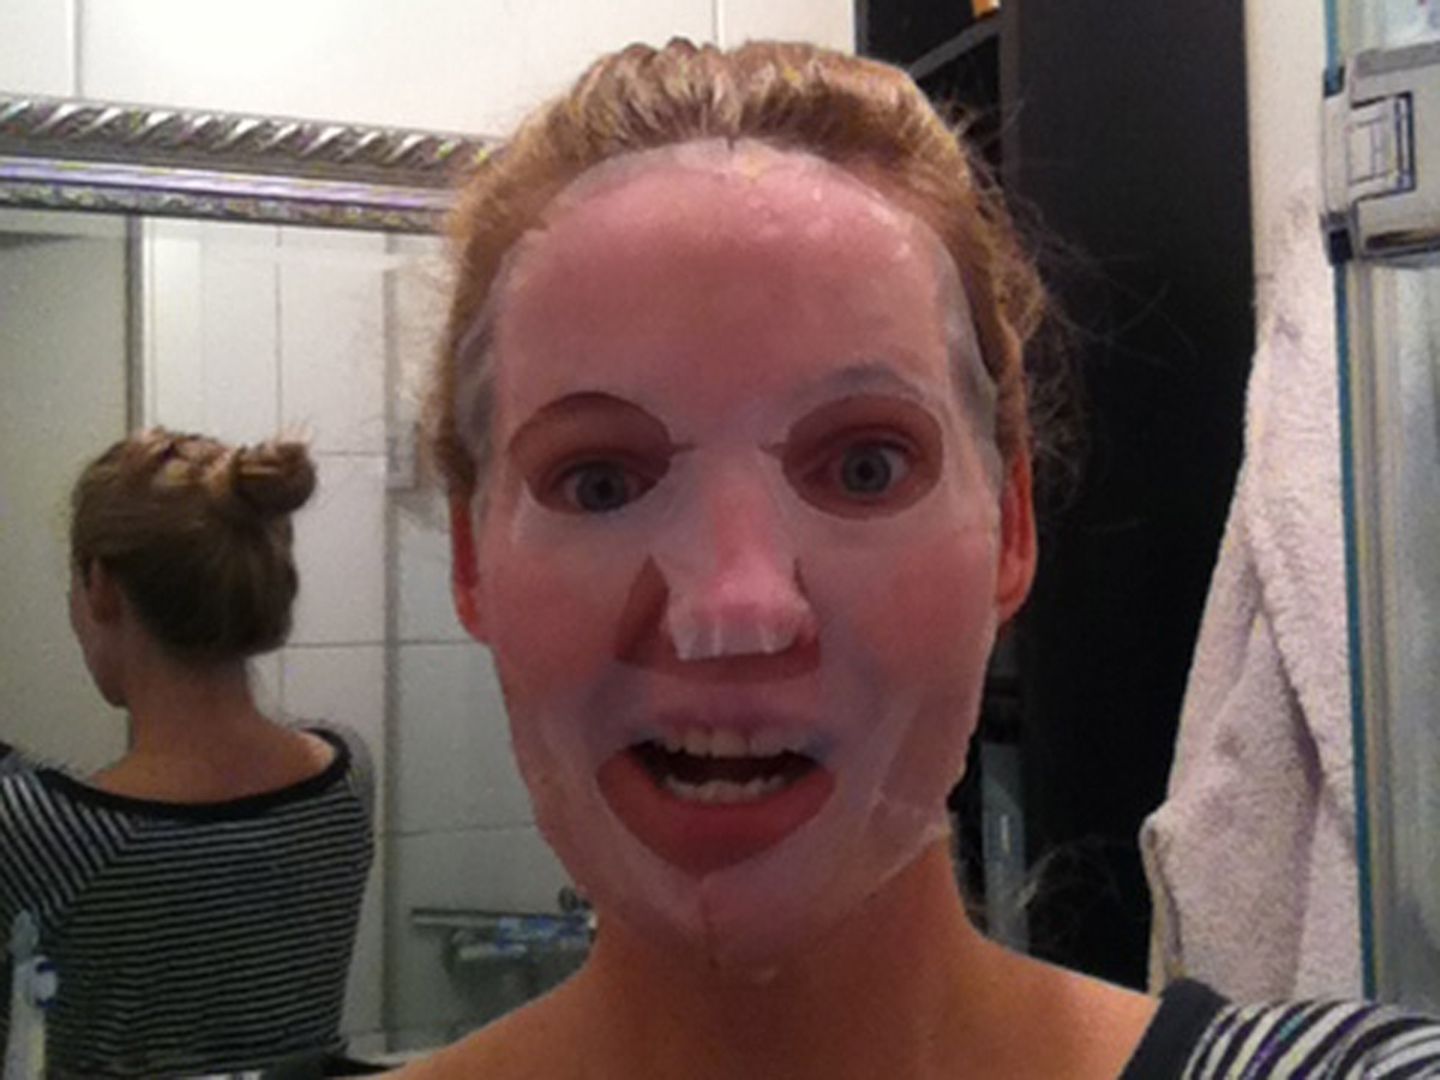 Jana testet: "Bio Cellulose Facial Treatment Maske" von 111Skin